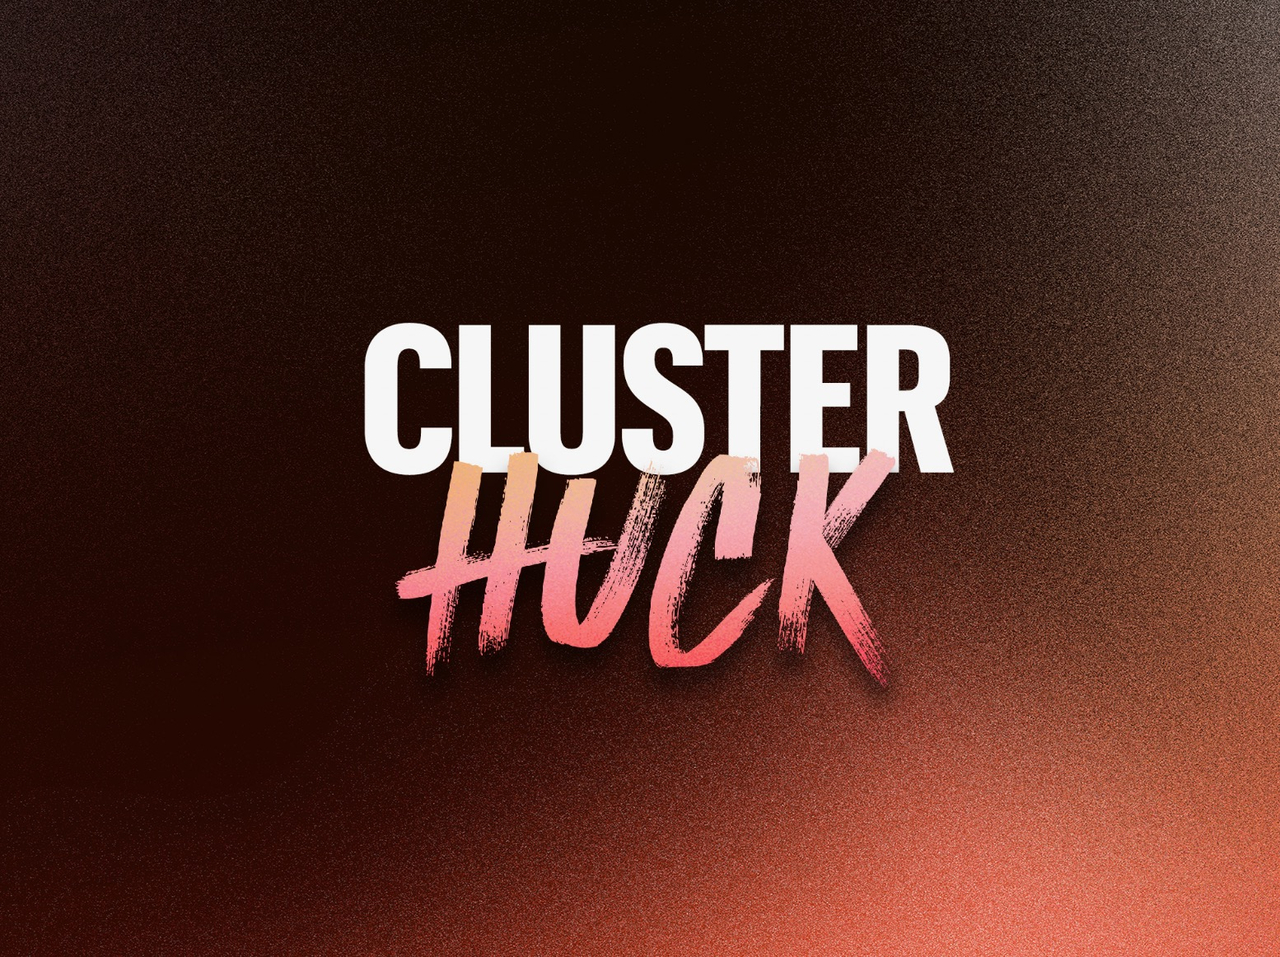 clusterhuck